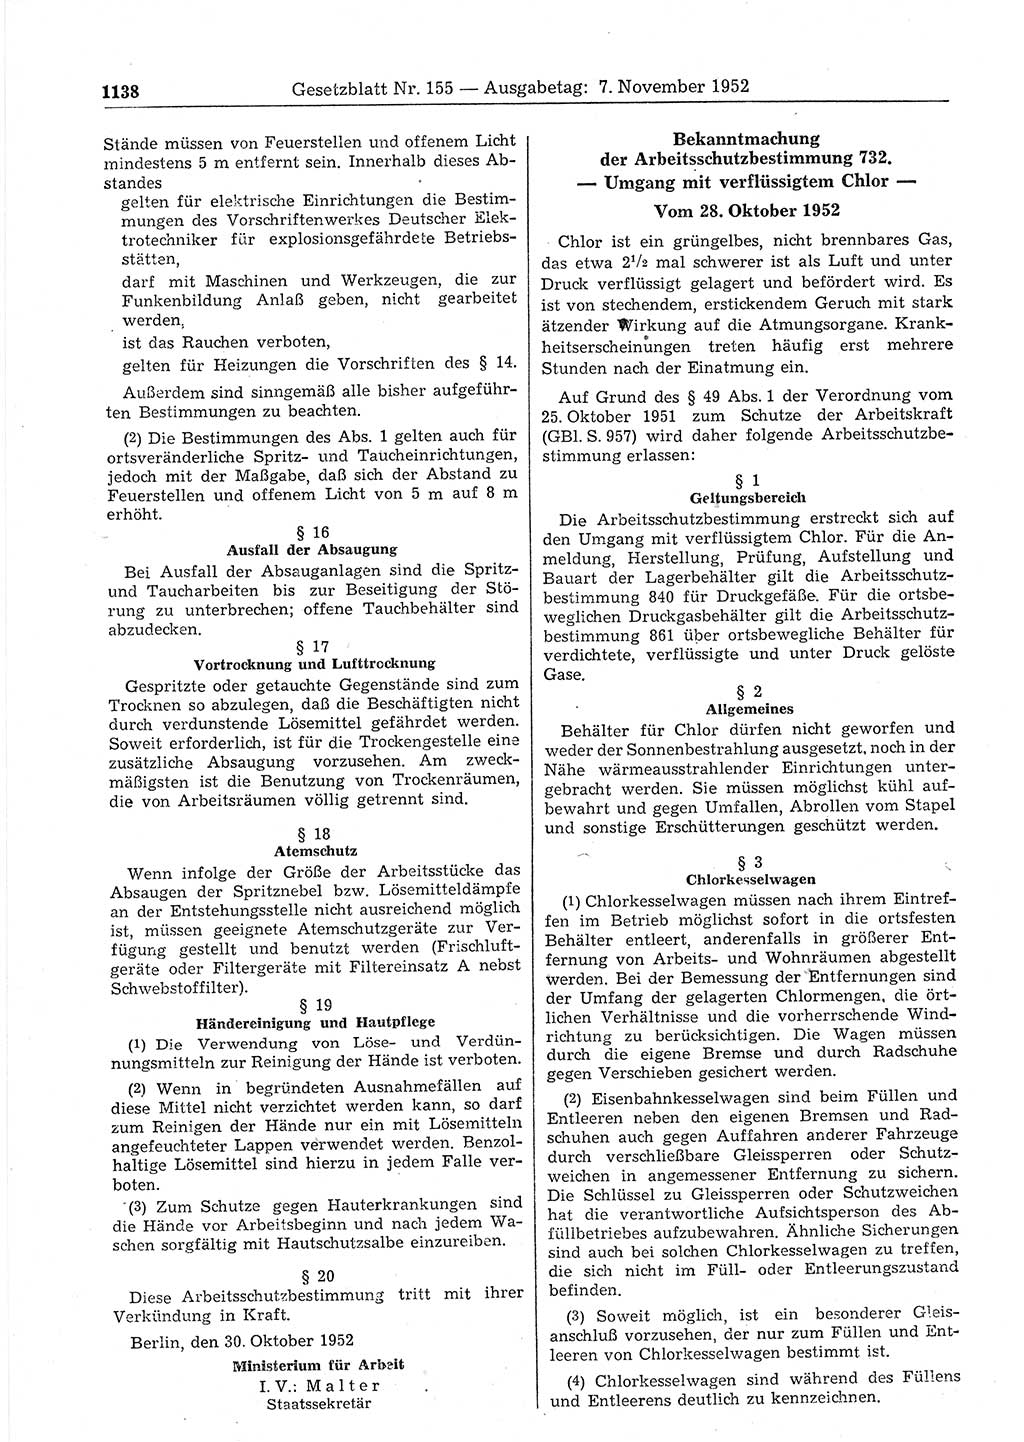 Gesetzblatt (GBl.) der Deutschen Demokratischen Republik (DDR) 1952, Seite 1138 (GBl. DDR 1952, S. 1138)